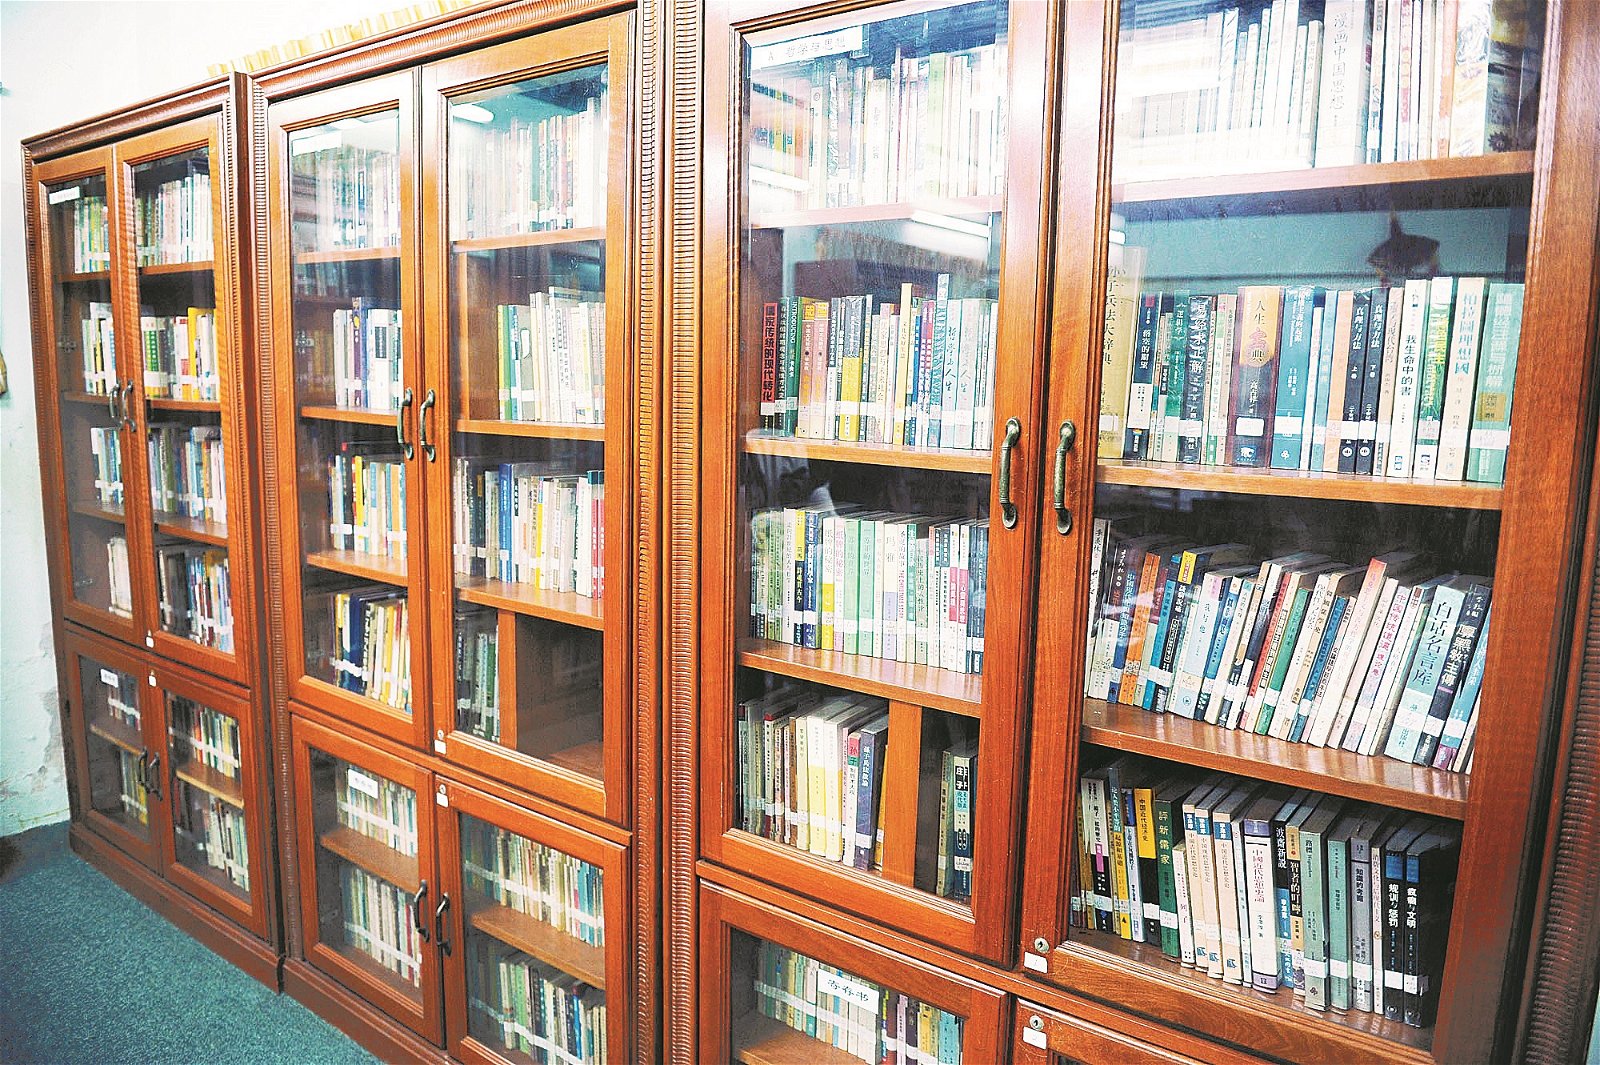 虽然人文图书馆已经闭馆，但馆内的藏书并没有浪费，而是分别派发给其他民办图书馆。